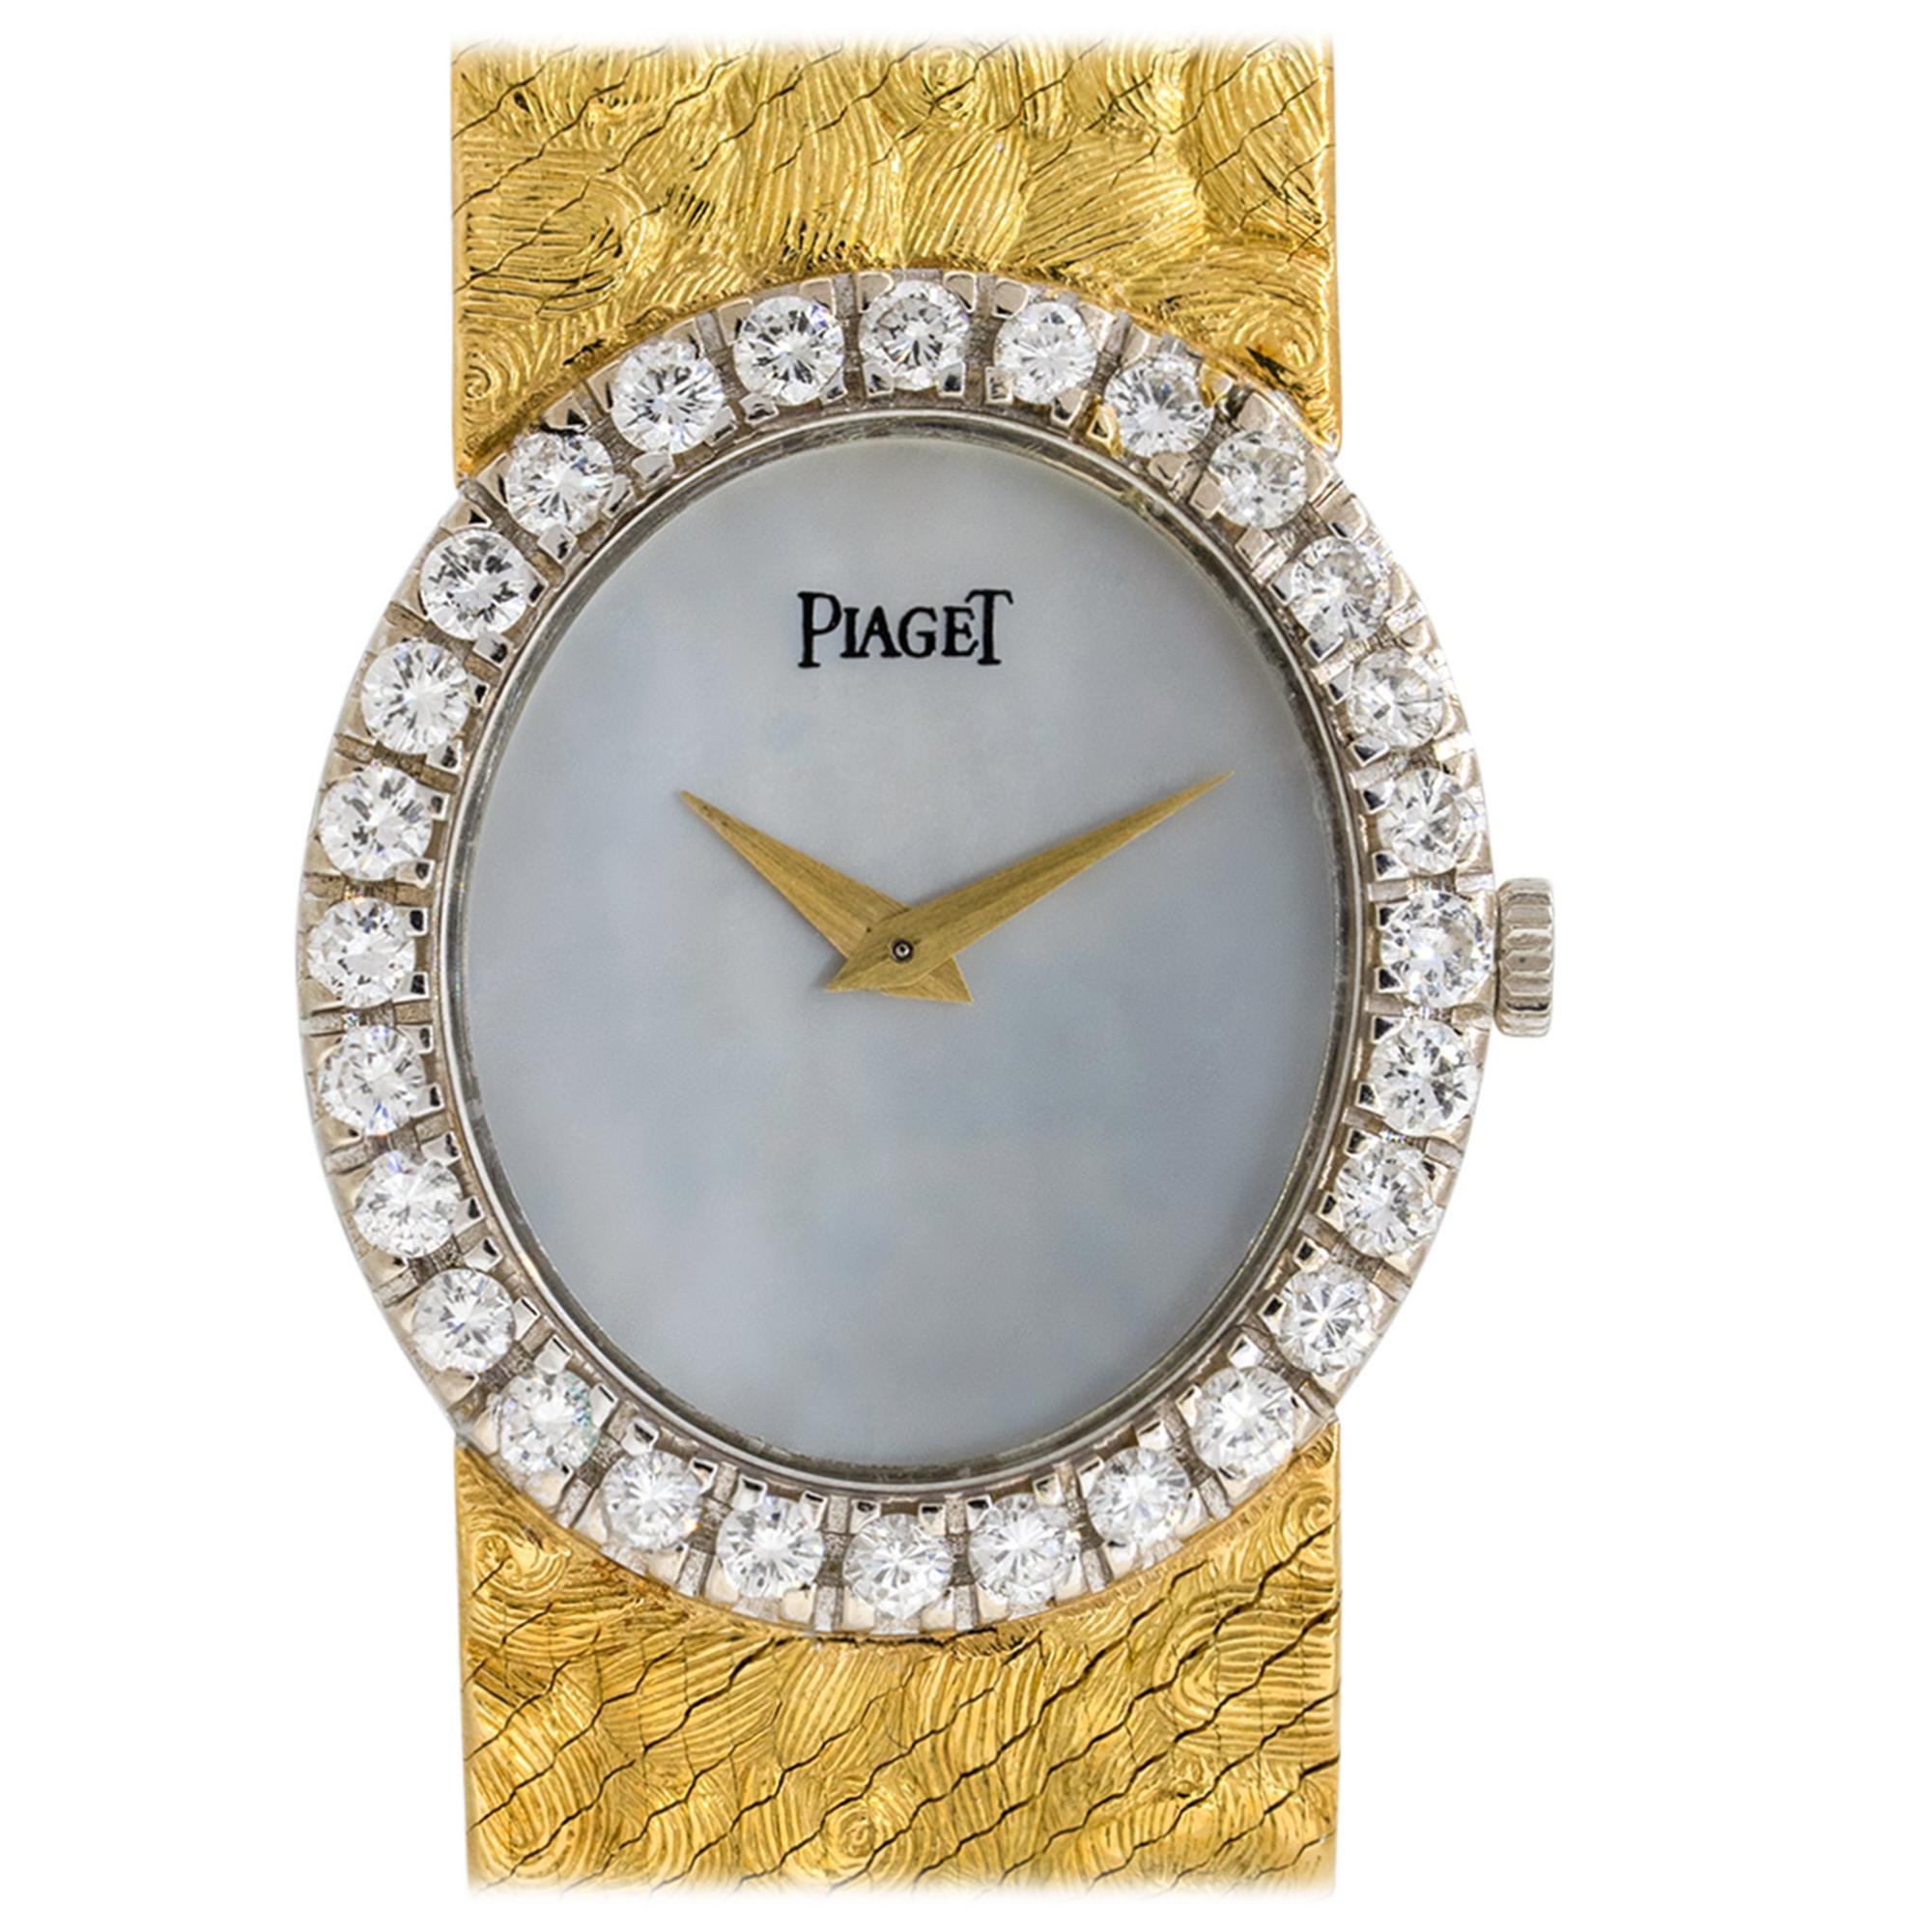 Piaget 9814 Perlmutt-Zifferblatt-Diamant-Uhr 18 Karat auf Lager im Angebot